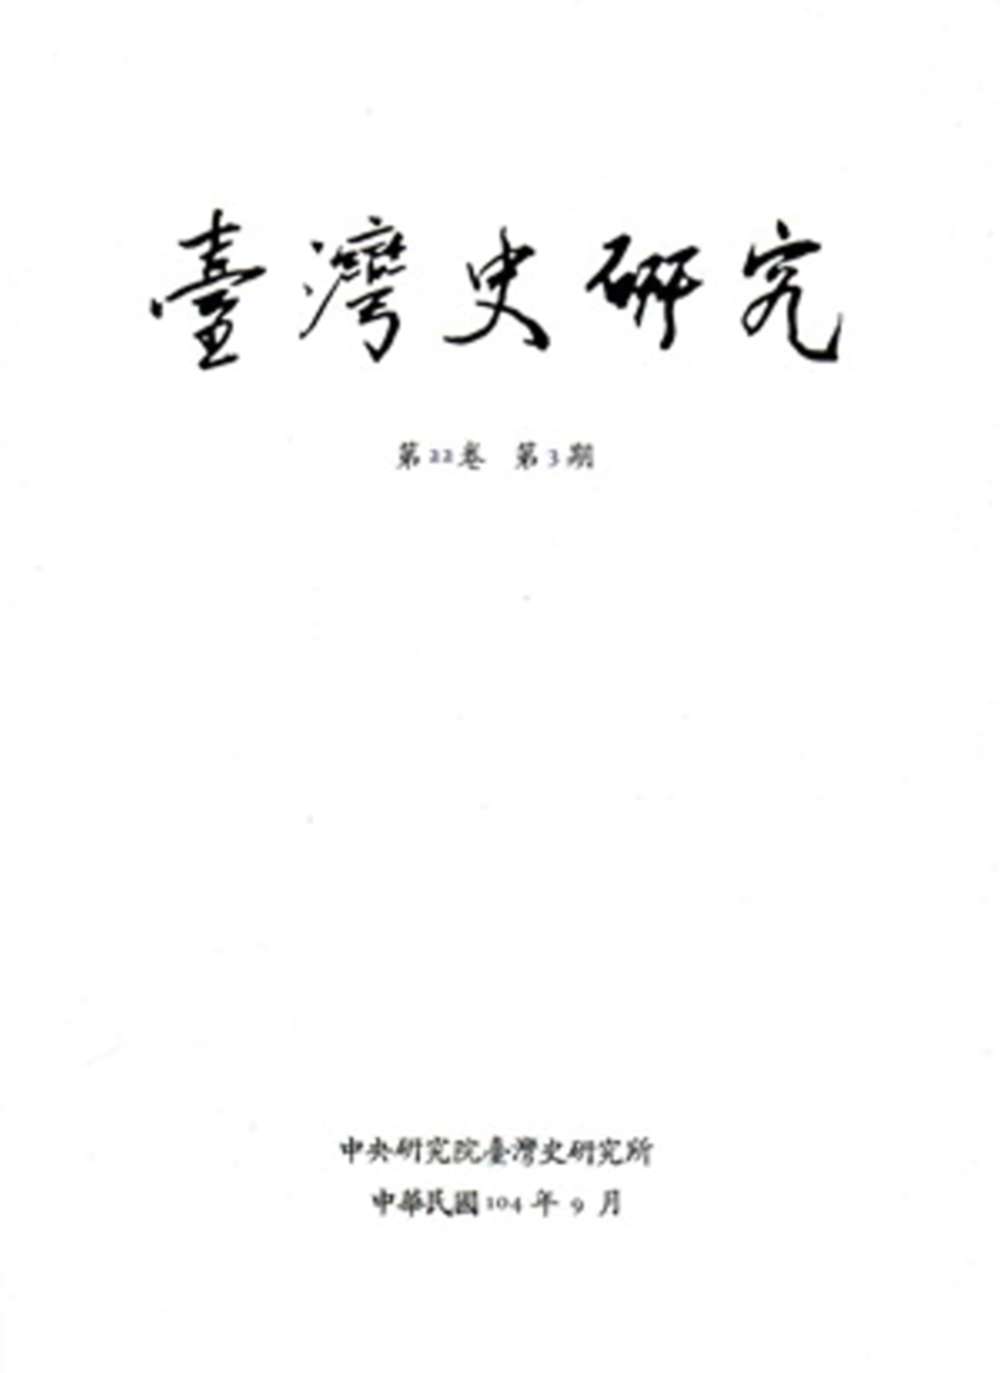 臺灣史研究第22卷3期(104.09)